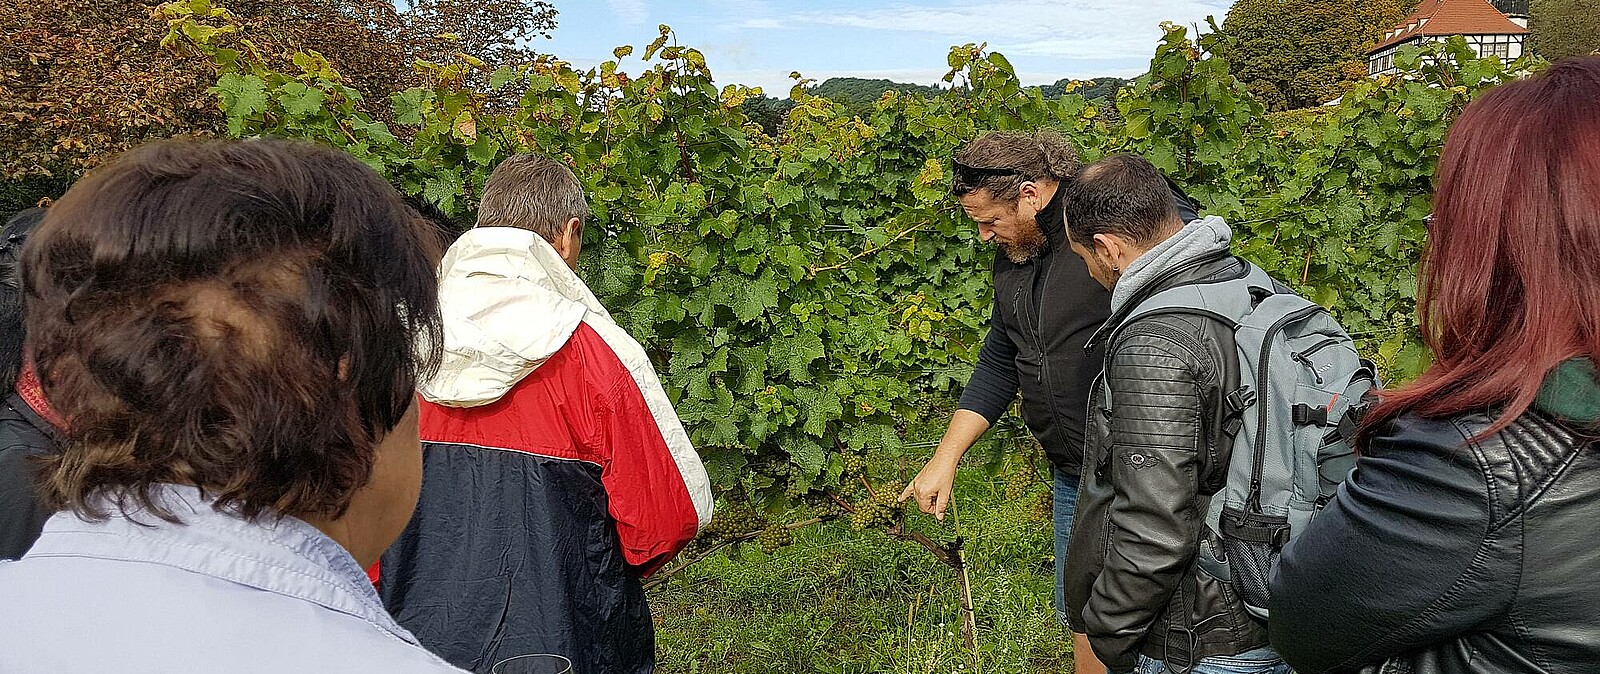 Unser Gästeführer nimmt Sie mit hinter die Kulissen und zeigt Ihnen den Weinberg von seiner schönsten Seite. Erleben Sie die Radebeuler Weinberge und genießen Sie sächsische Spitzenweine.